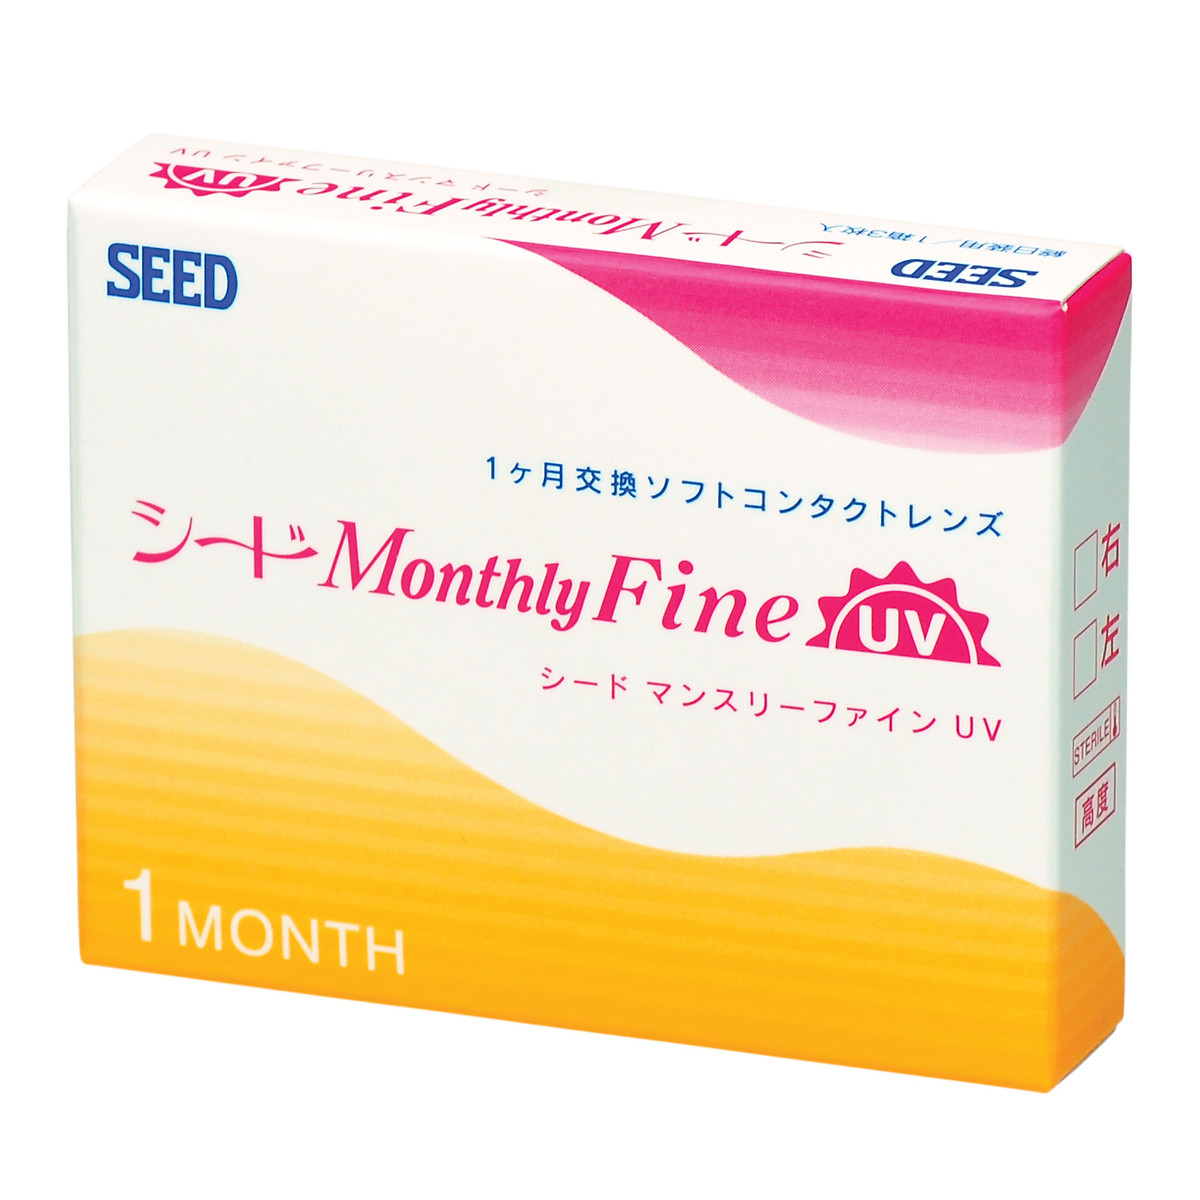 MonthlyFine UV- Kính áp tròng SEED 1 tháng (3lenses)